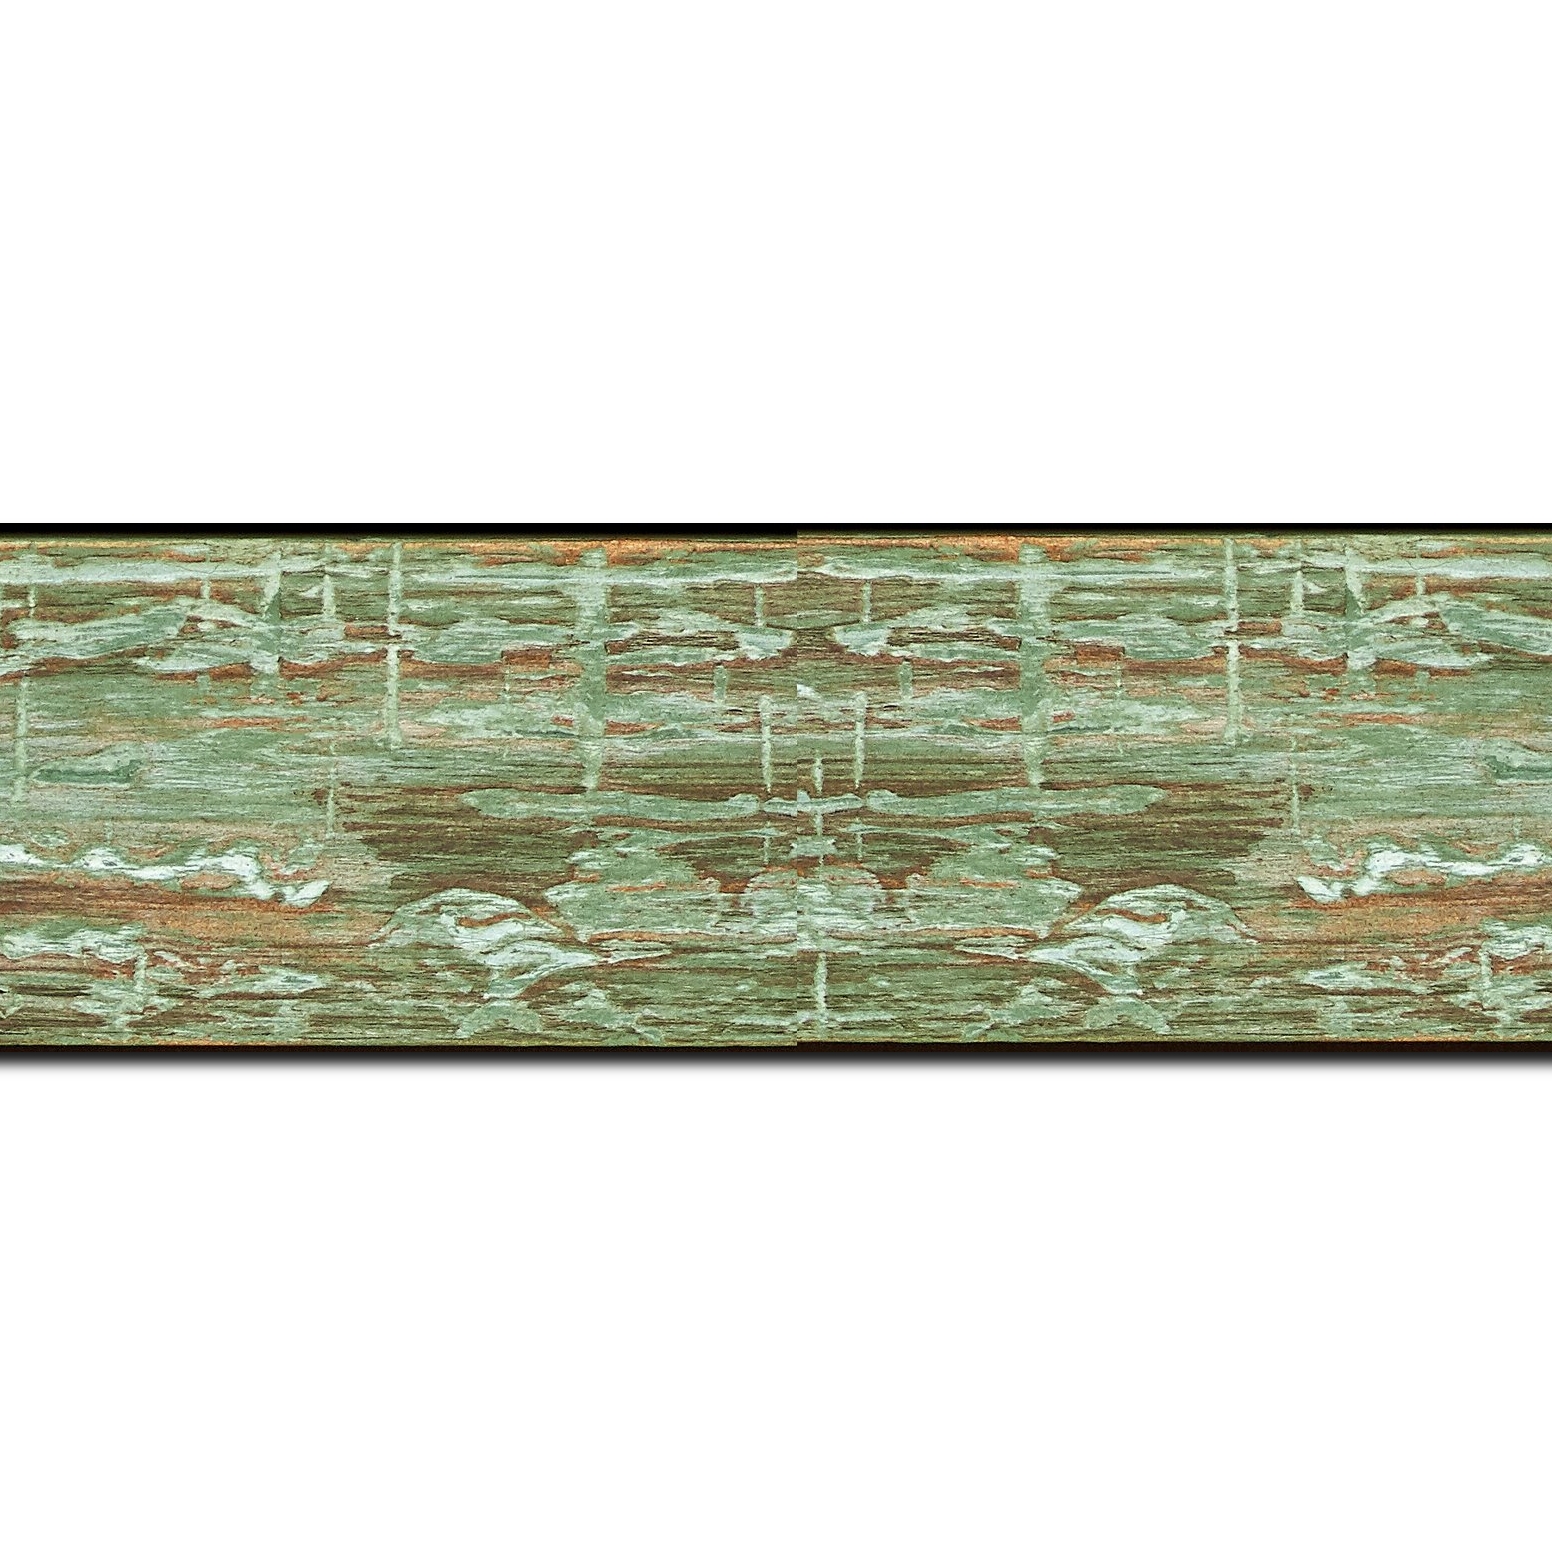 Baguette longueur 1.40m bois profil plat largeur 5cm couleur vert finition bois brut aspect palette